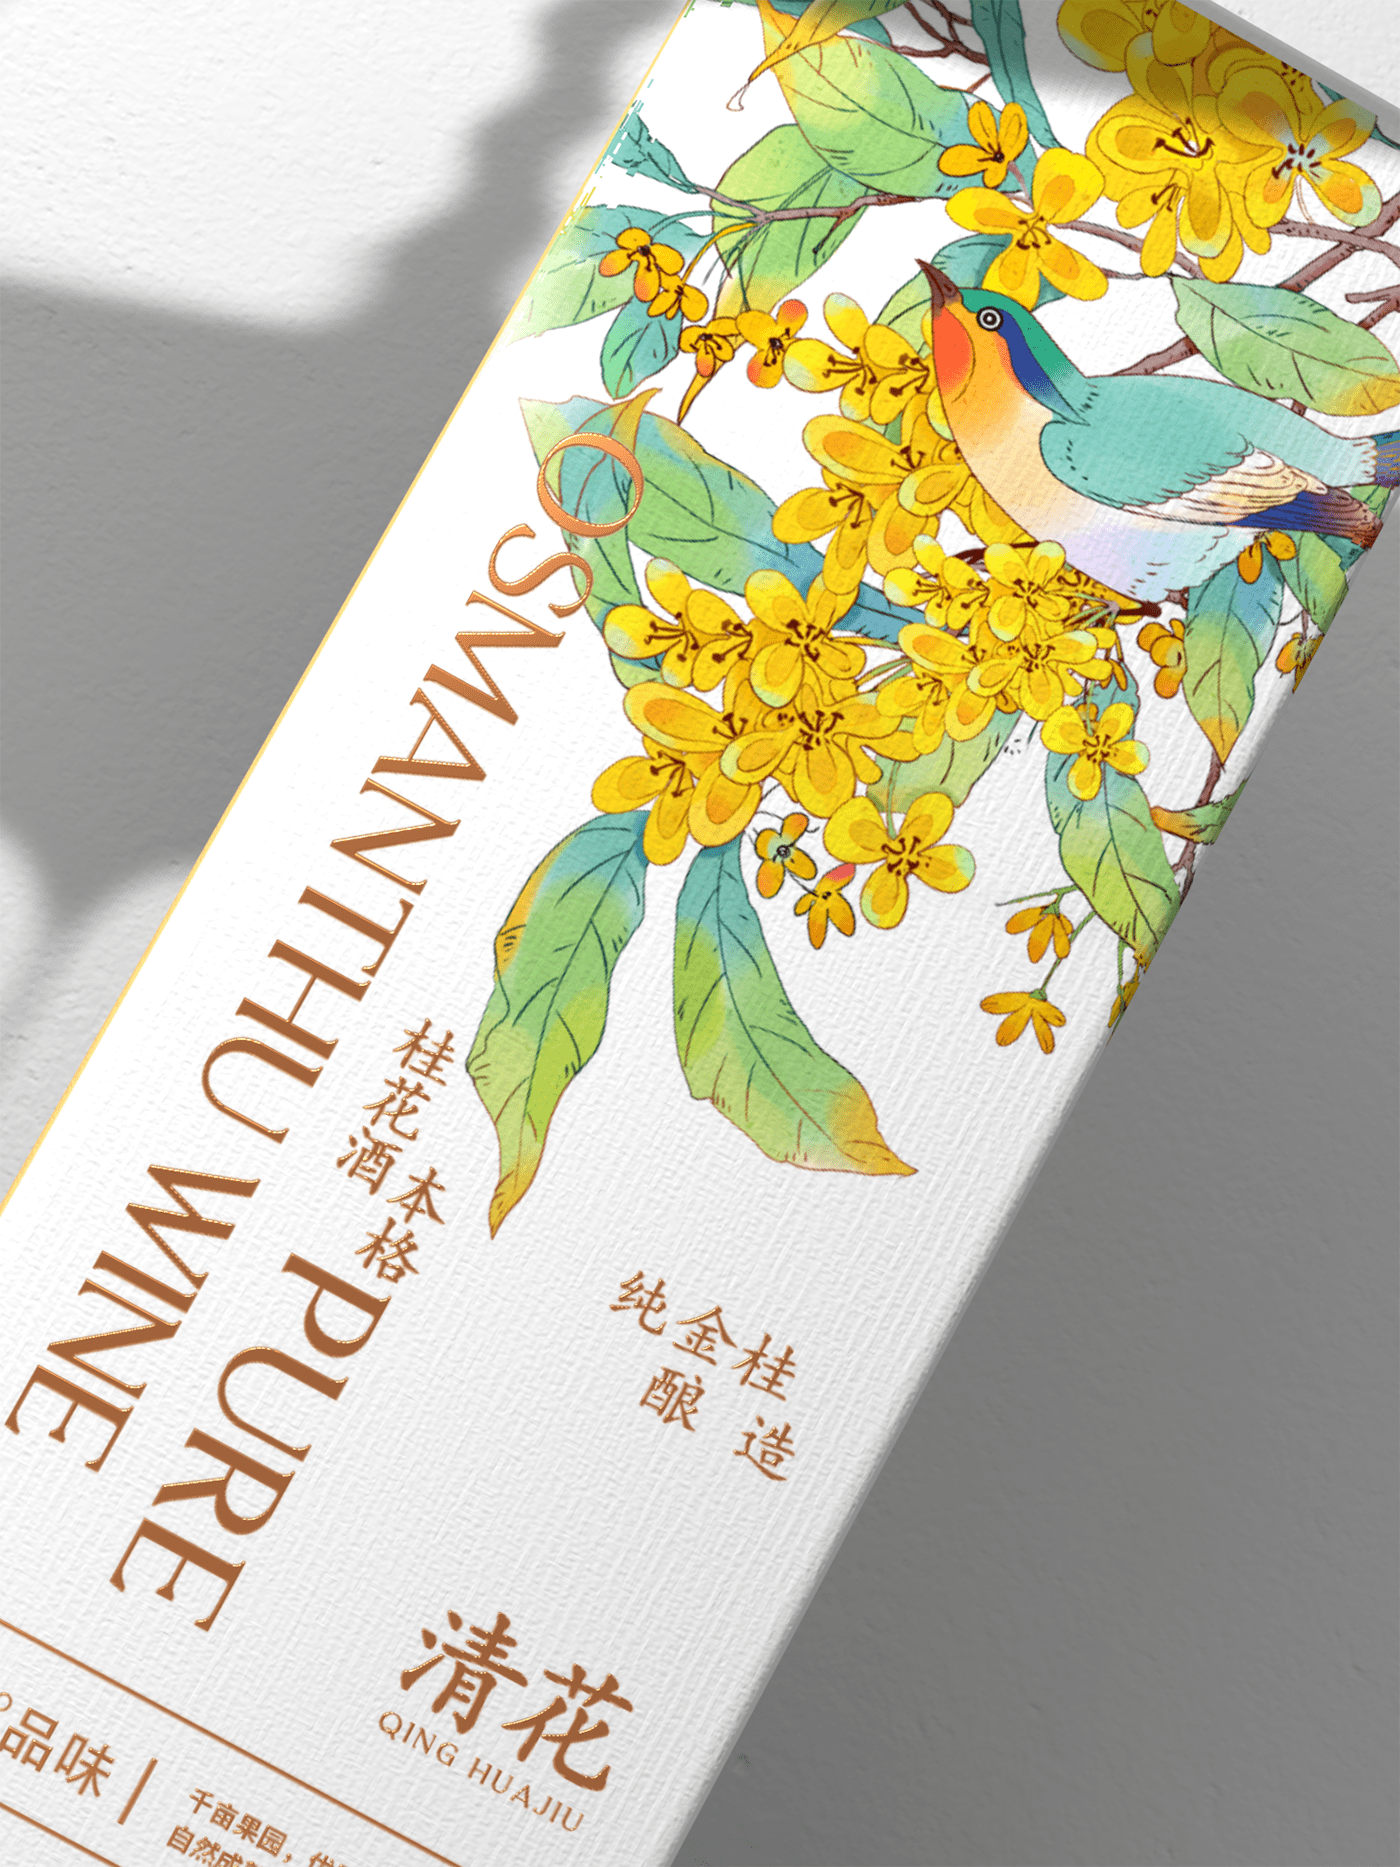 酒包装设计 插画包装 中国风   果酒包装设计 包装设计 packaging design 插画 手绘 果酒 品牌 包装 设计 水果酒